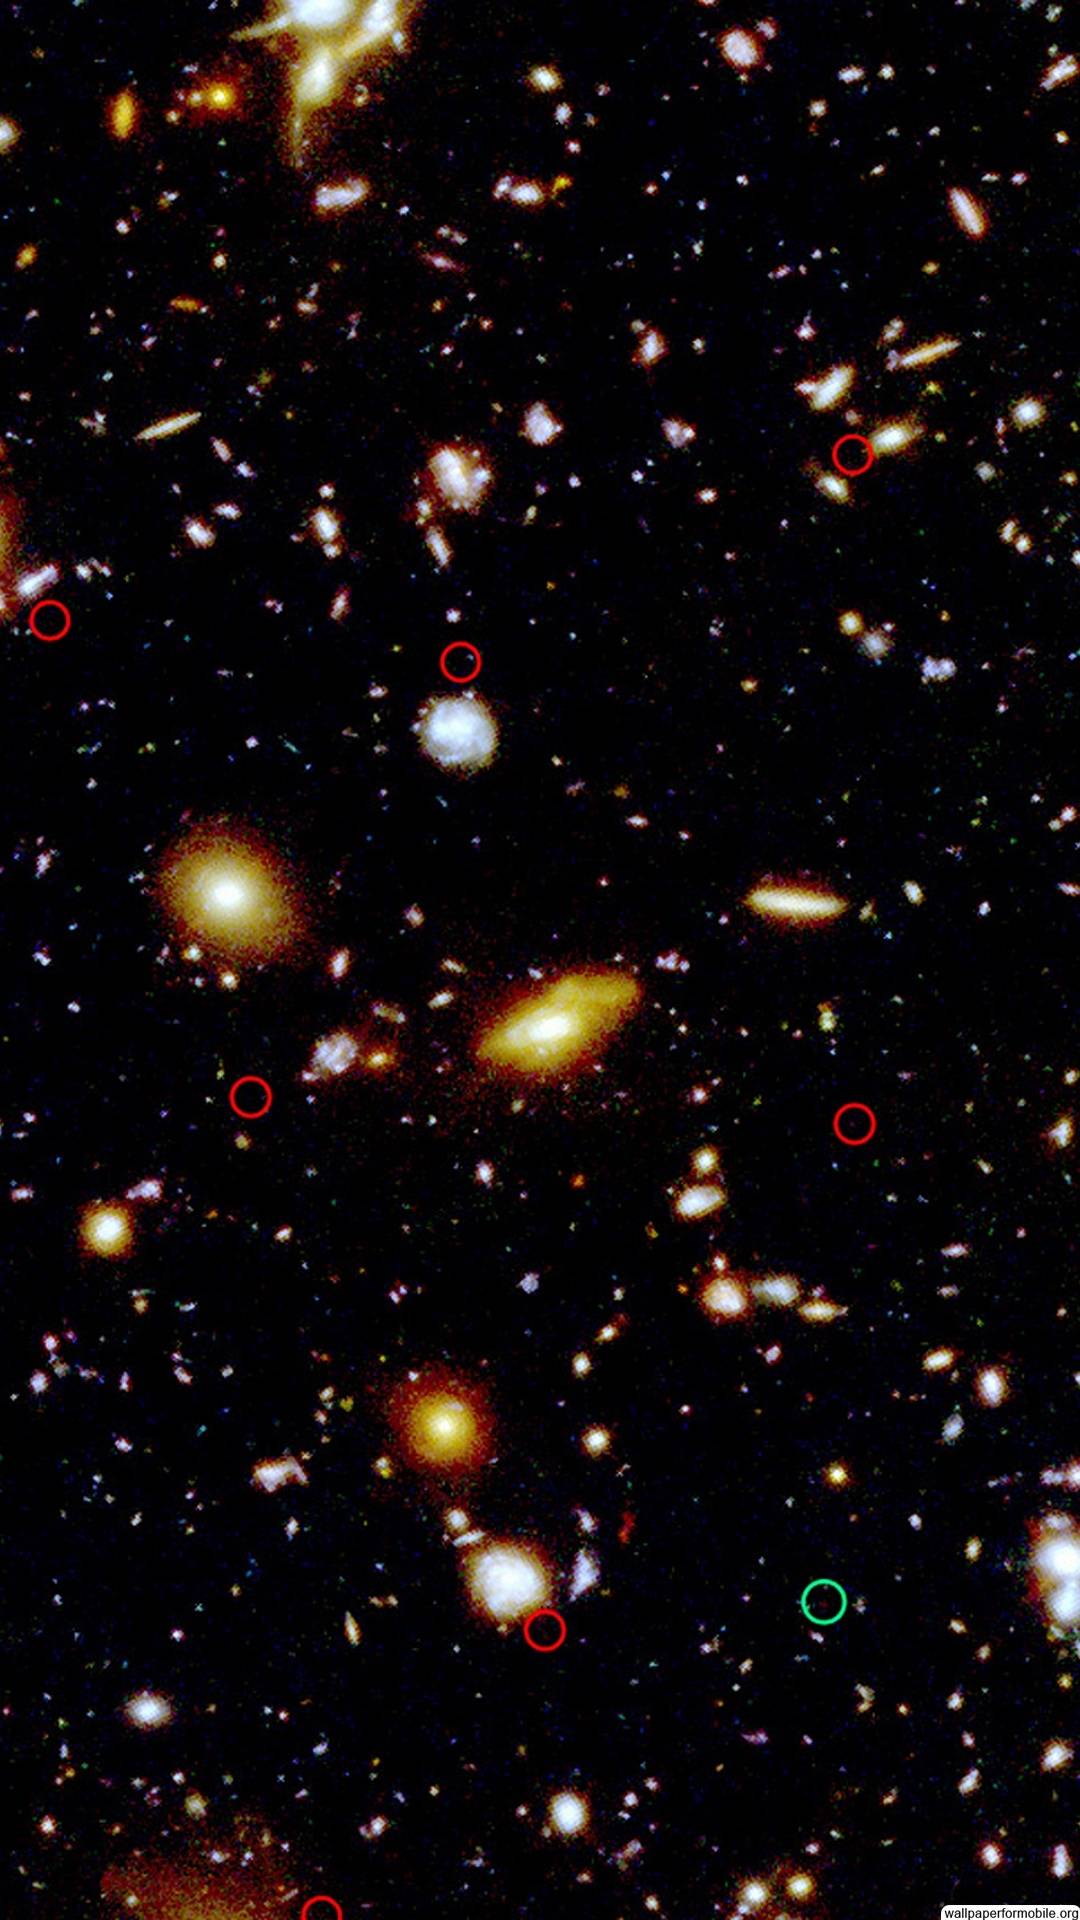 Hubble Deep Field Image Wallpaper